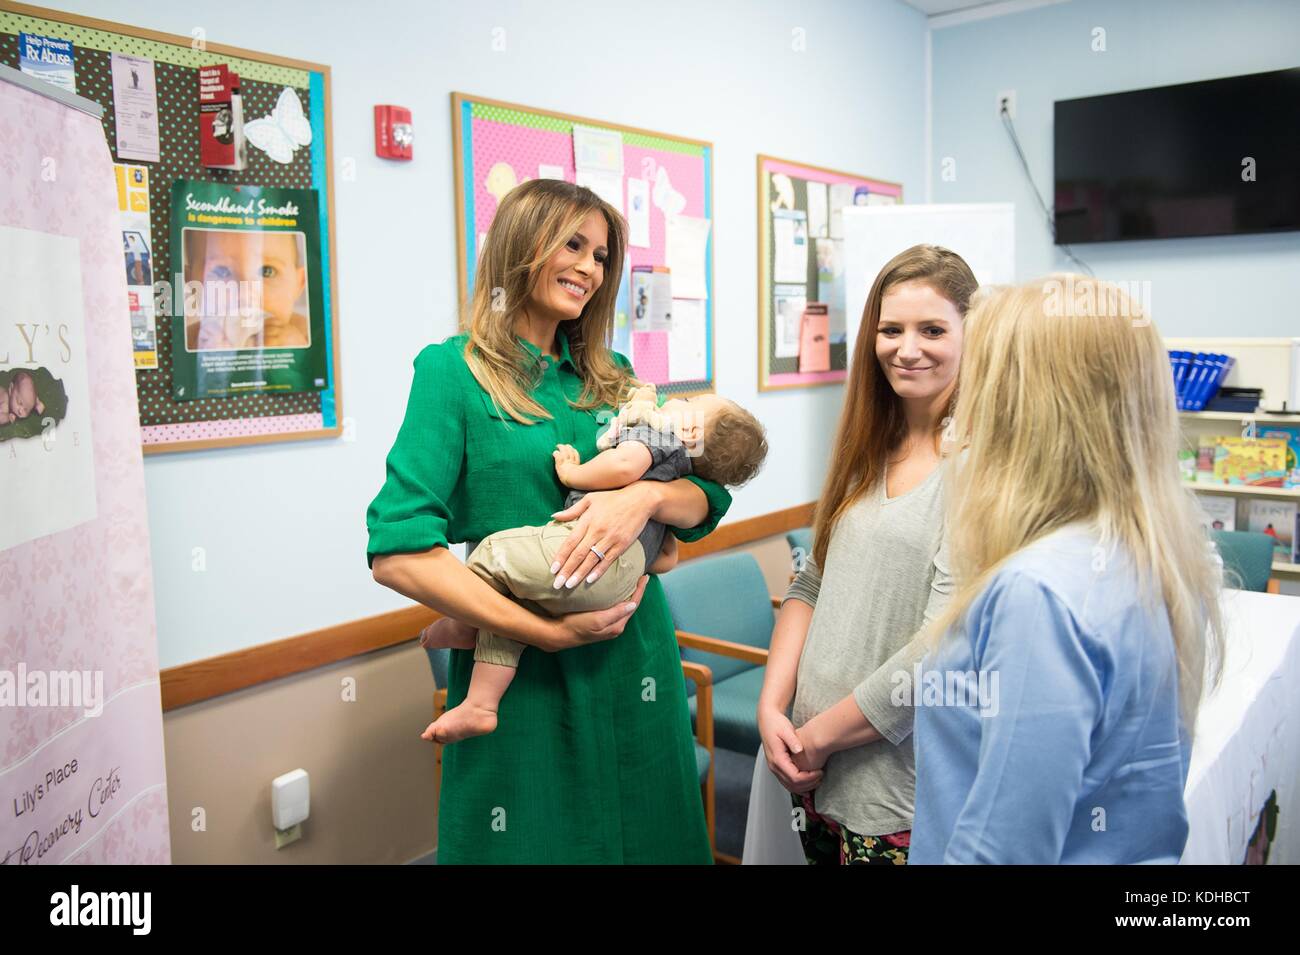 First Lady der USA melania Trump hält ein kleines Kind als sie Lilys Ort Klinik touren Oktober 10, 2017 in Huntington, West Virginia. Die Fazilität für medizinische Versorgung für Säuglinge leiden unter Neugeborenen Enthaltsamkeit Syndrom durch Opioid-entzugsbehandlung verursacht. Stockfoto